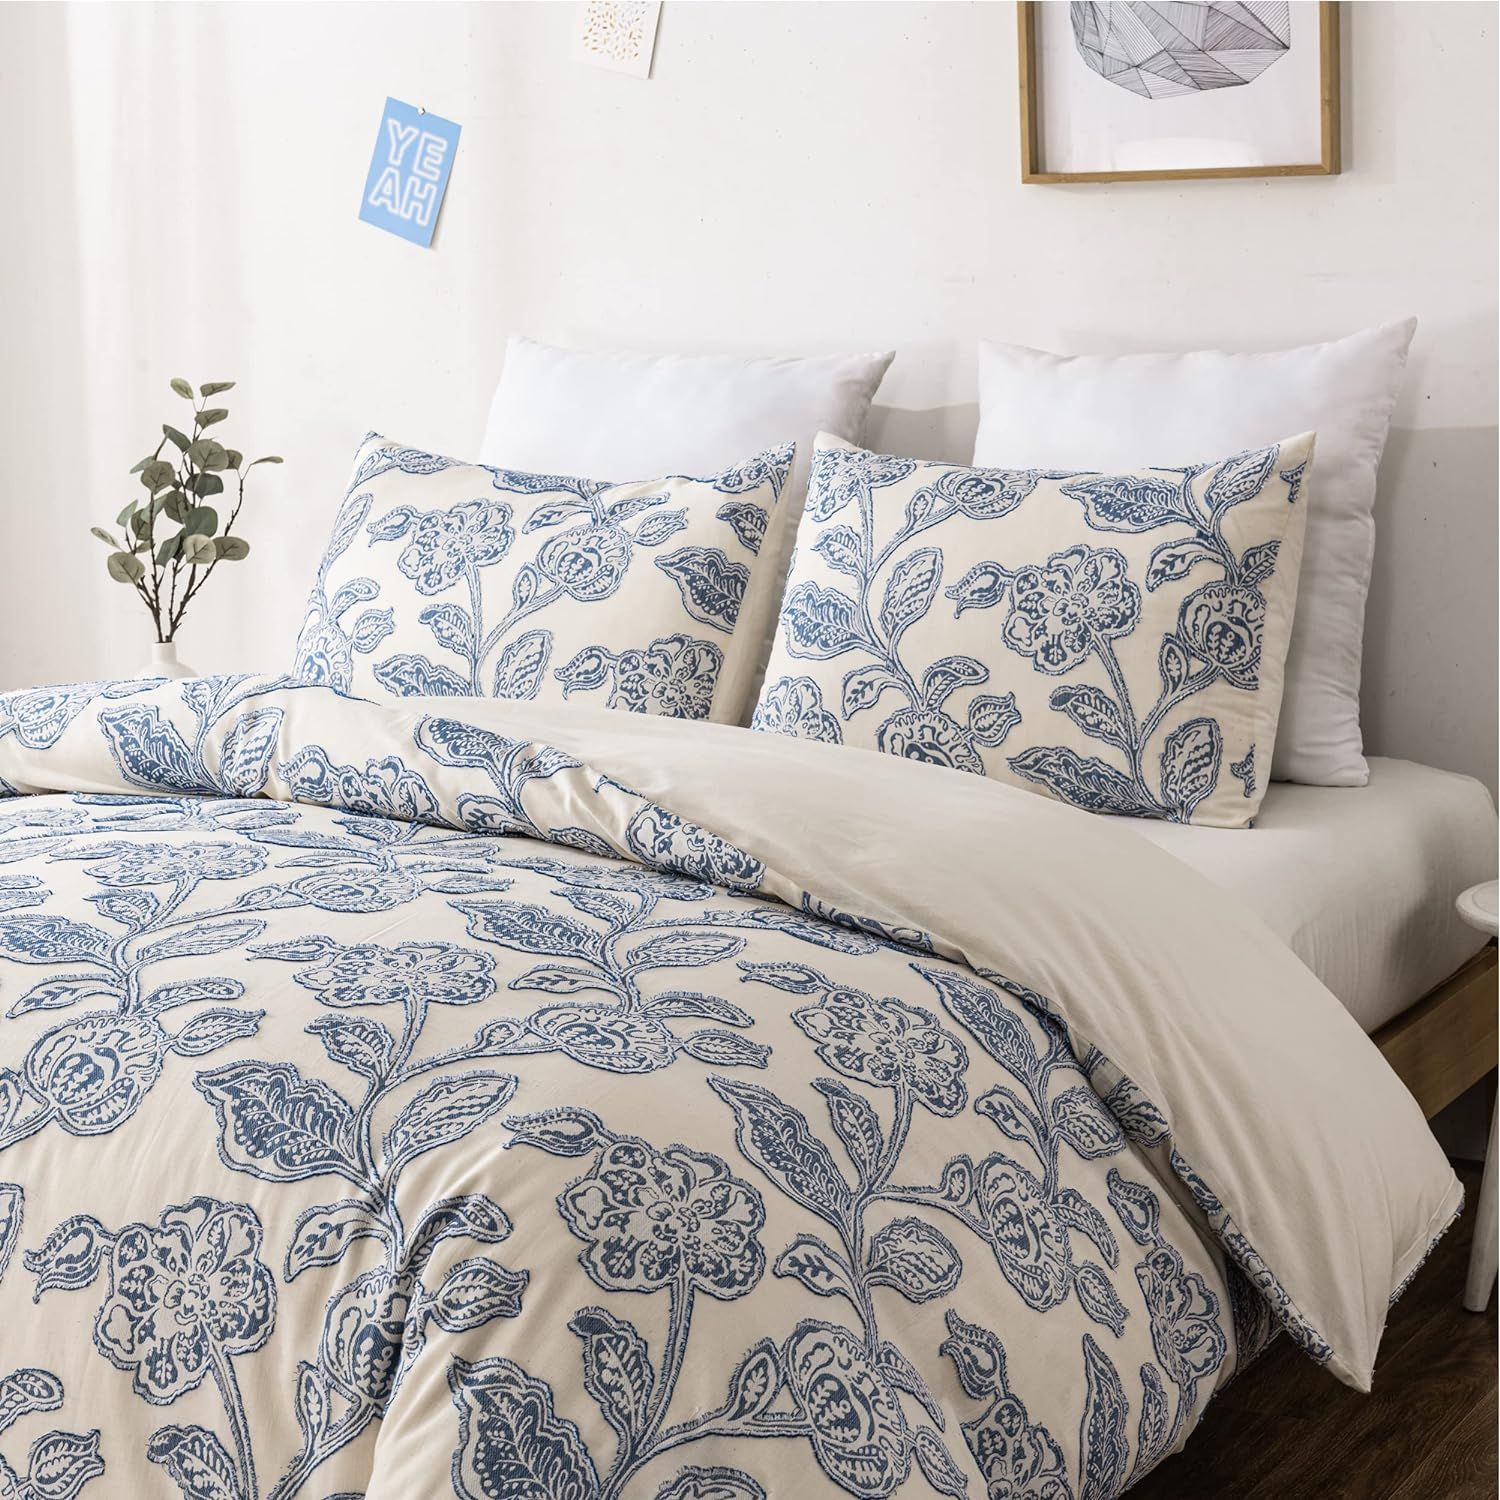 Duvetex 100% Floral Cotton Duvet Cover King Size Bedding Set Soft Textured Comfy Breathable Jacqu... | Amazon (US)